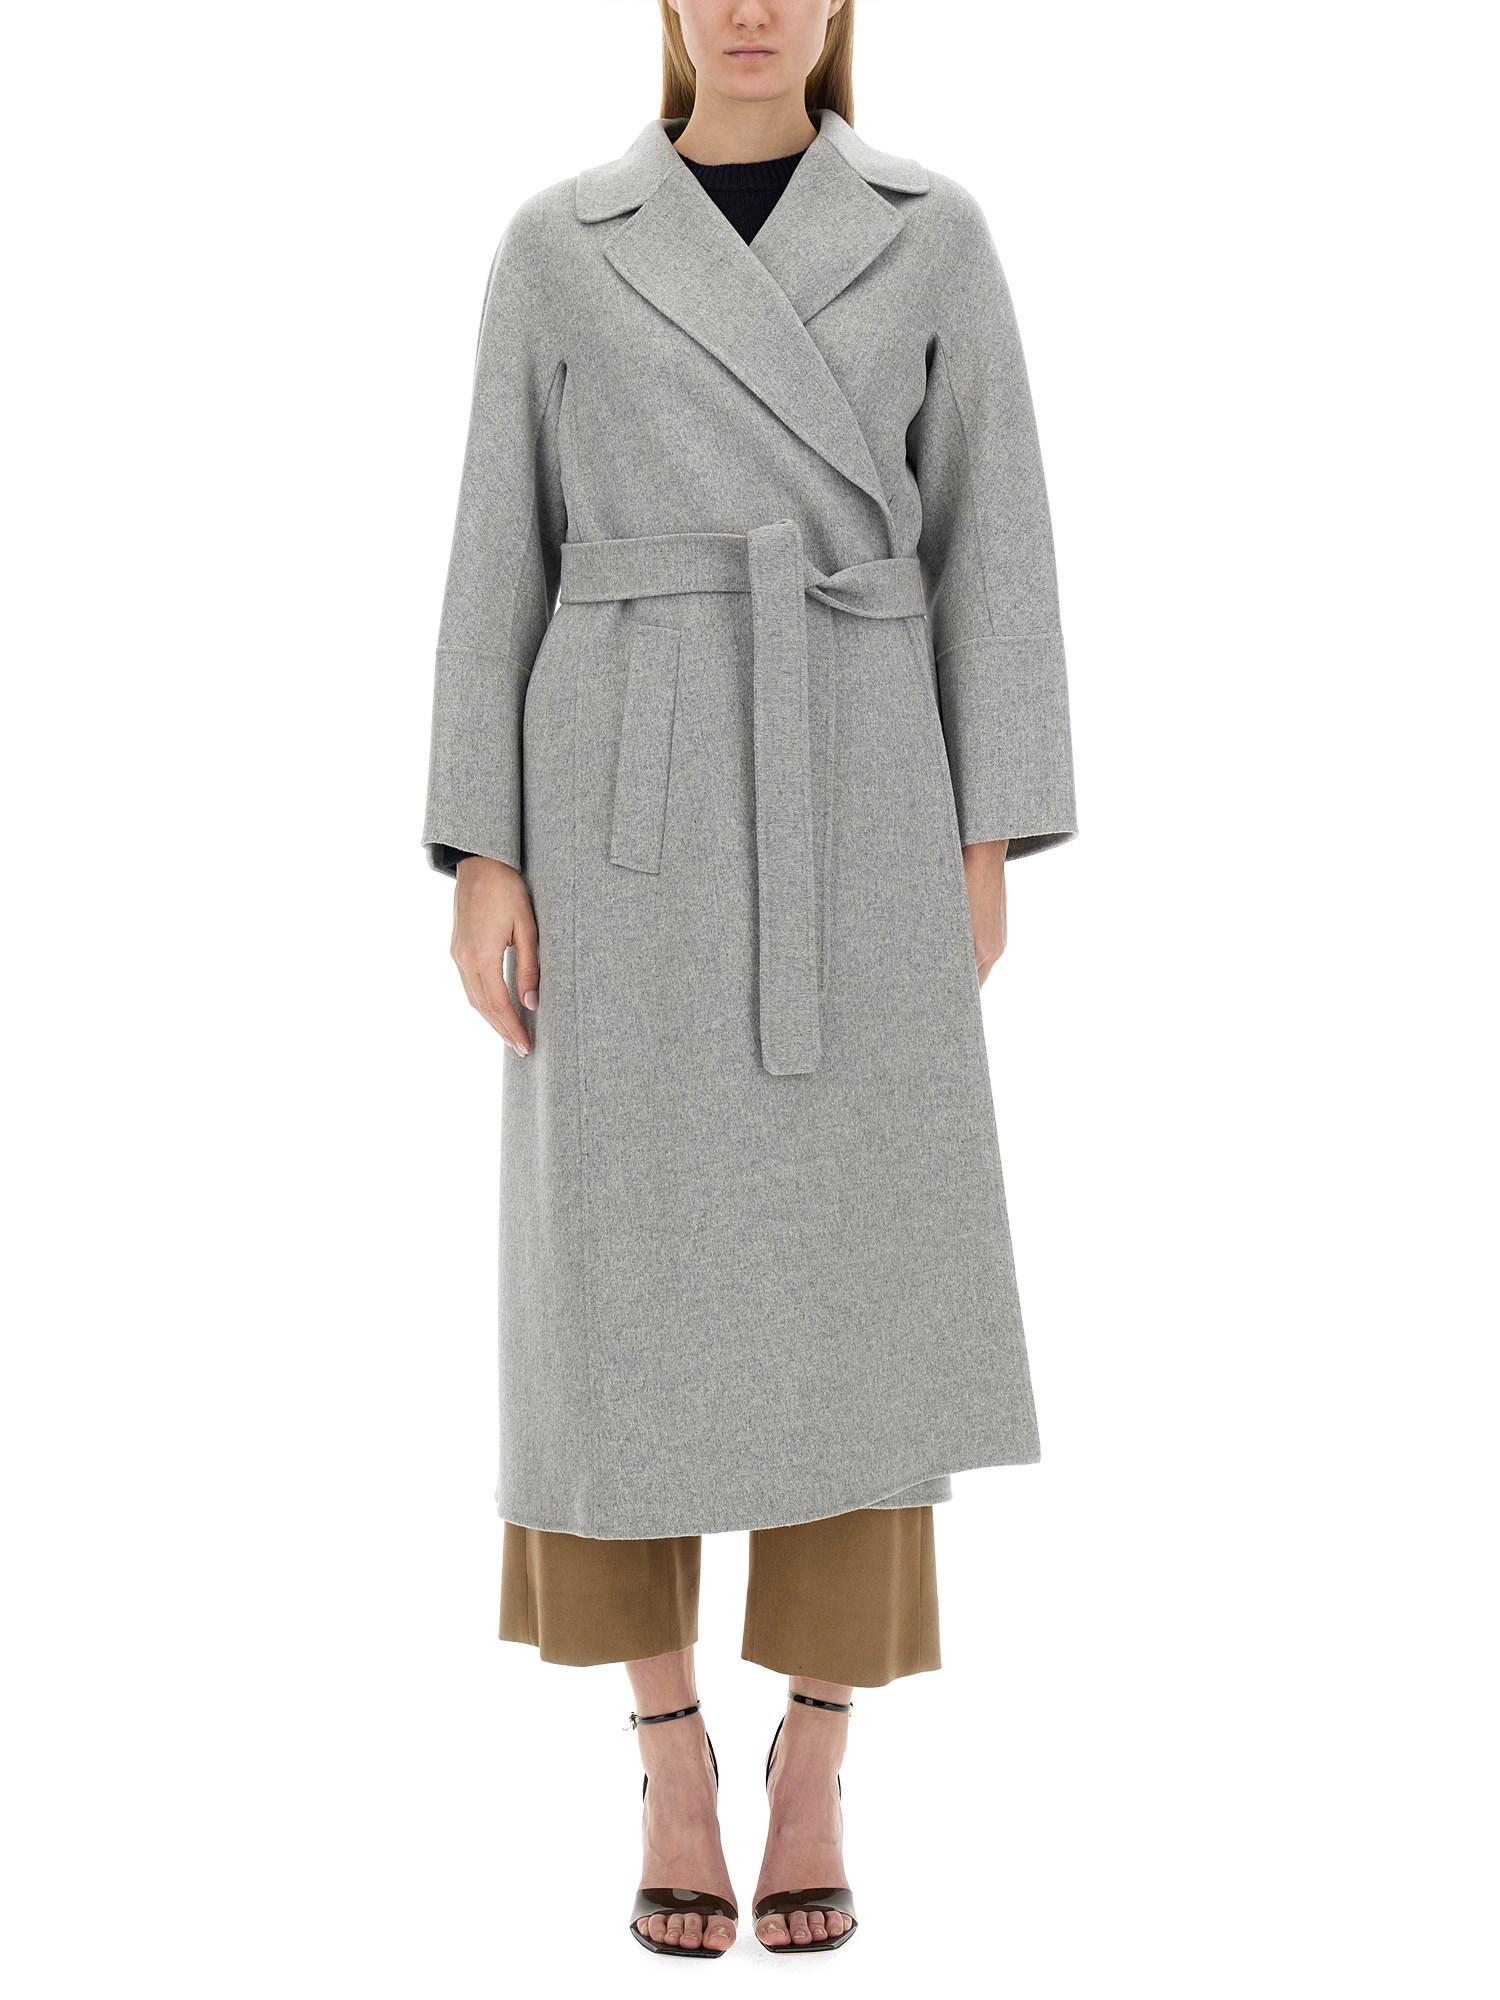 s max mara robe coat